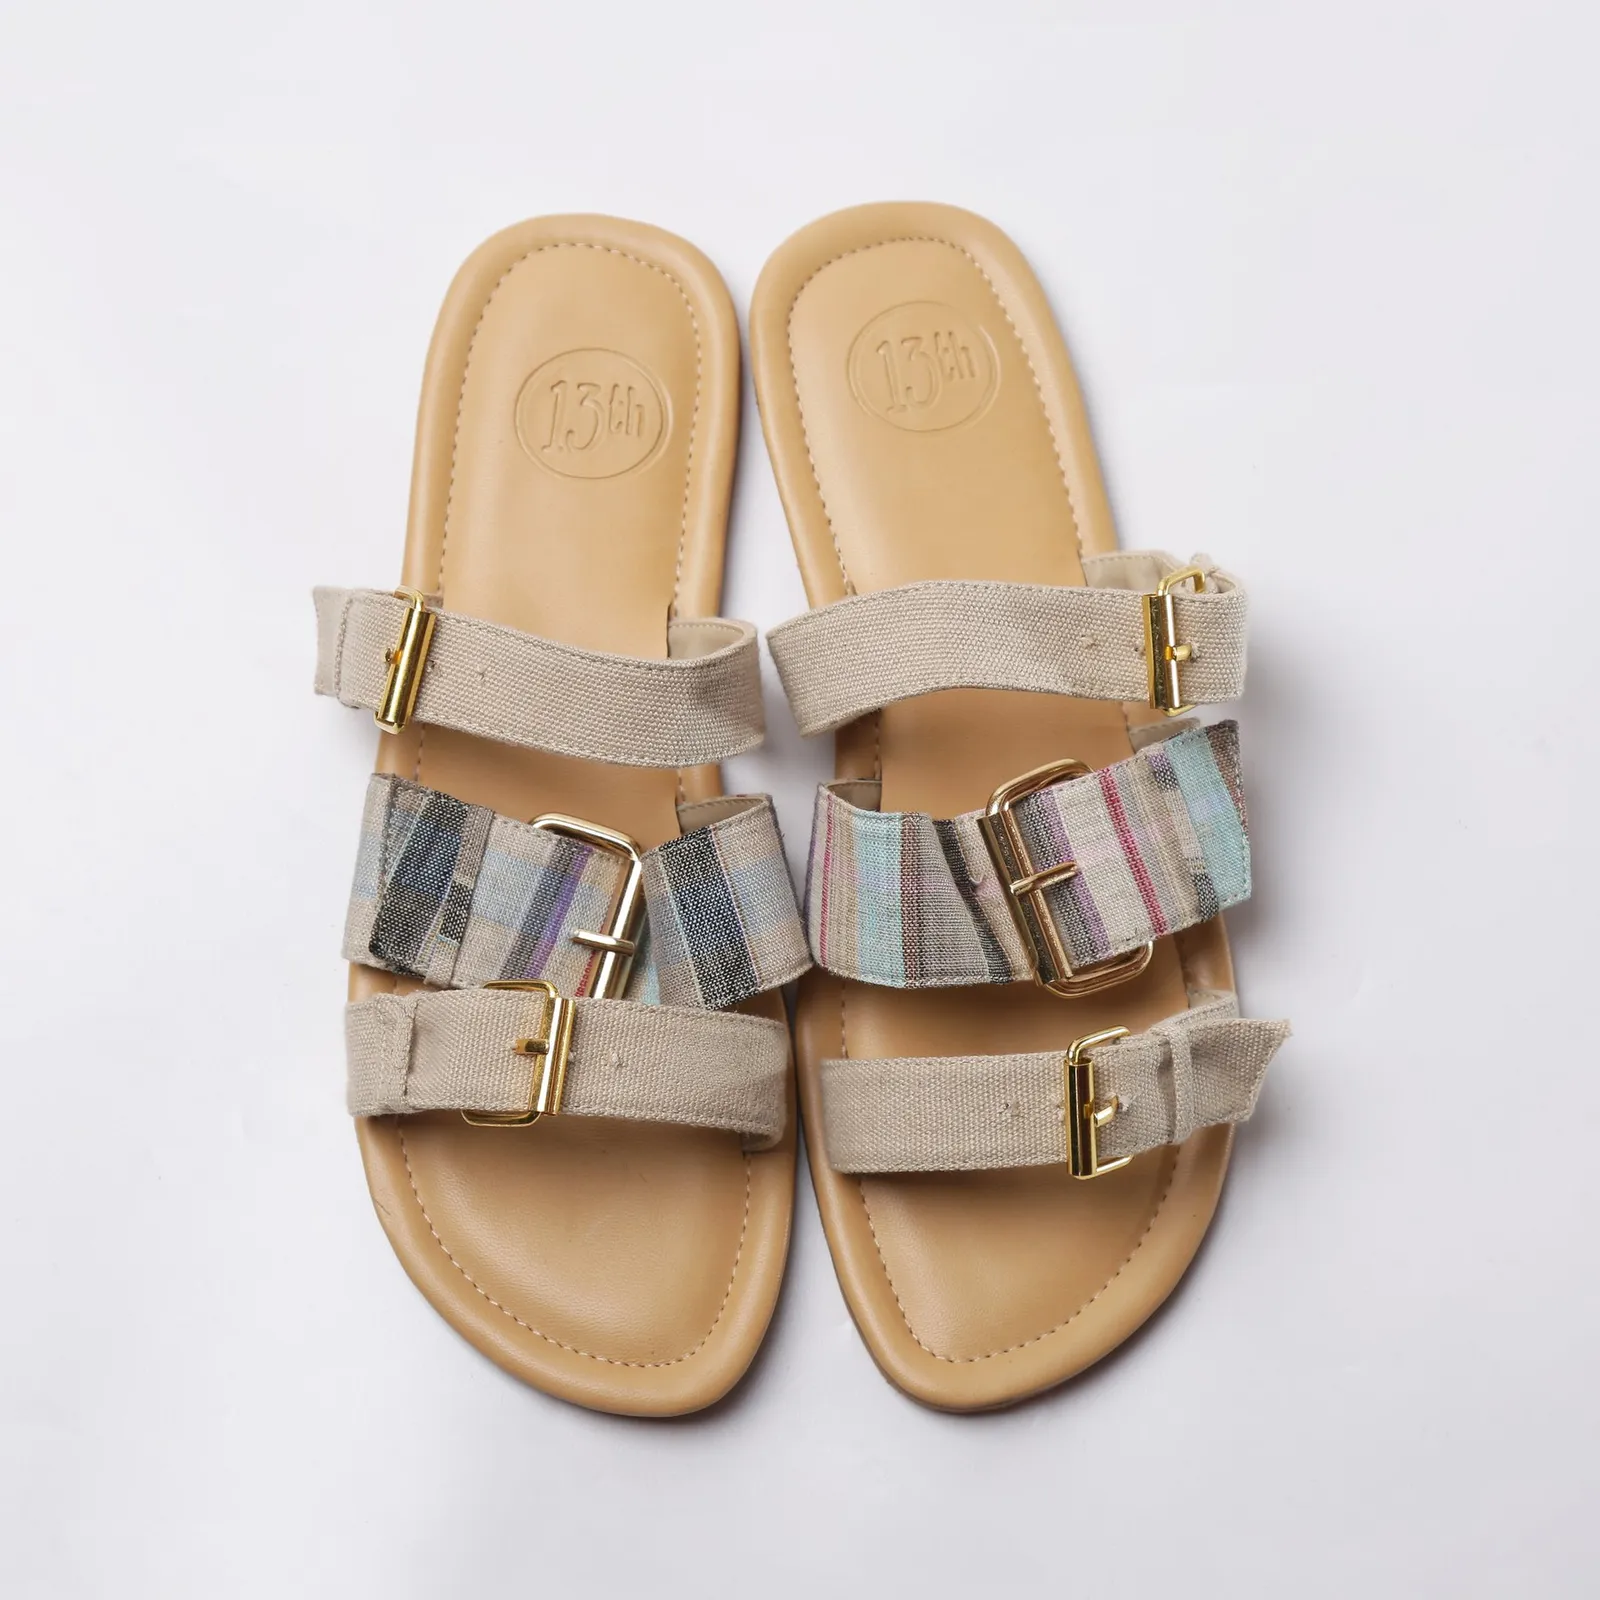 #PopbelaOOTD: Koleksi Sandal Modis Di Bawah 300 Ribu dari Brand Lokal